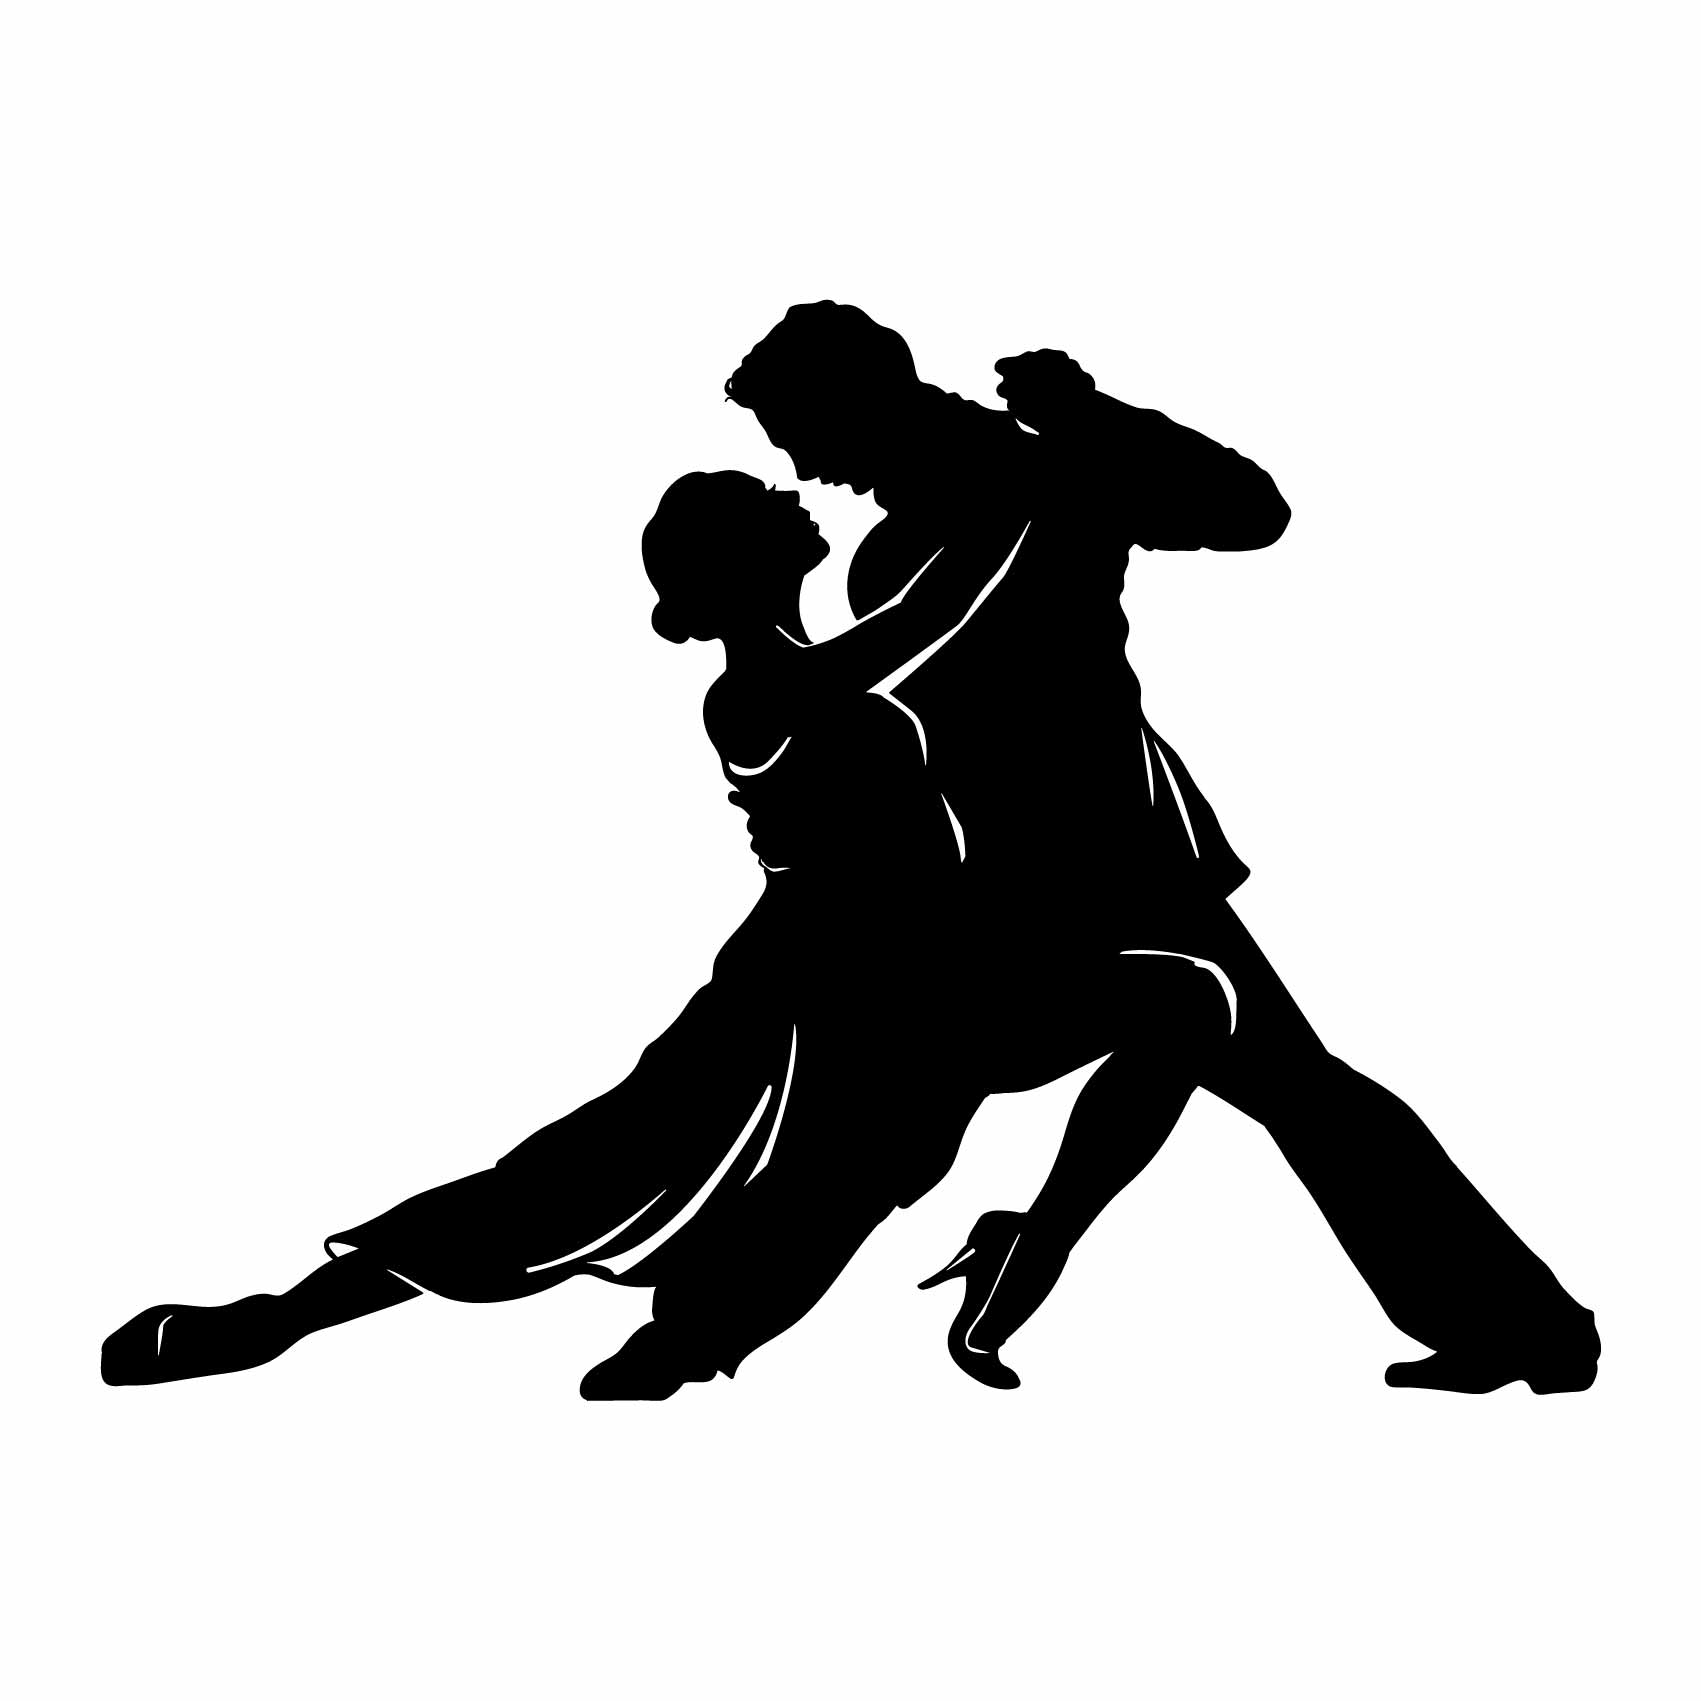 stickers-tango-ref34silhouette-stickers-muraux-silhouette-autocollant-chambre-salon-sticker-mural-ombre-(2)